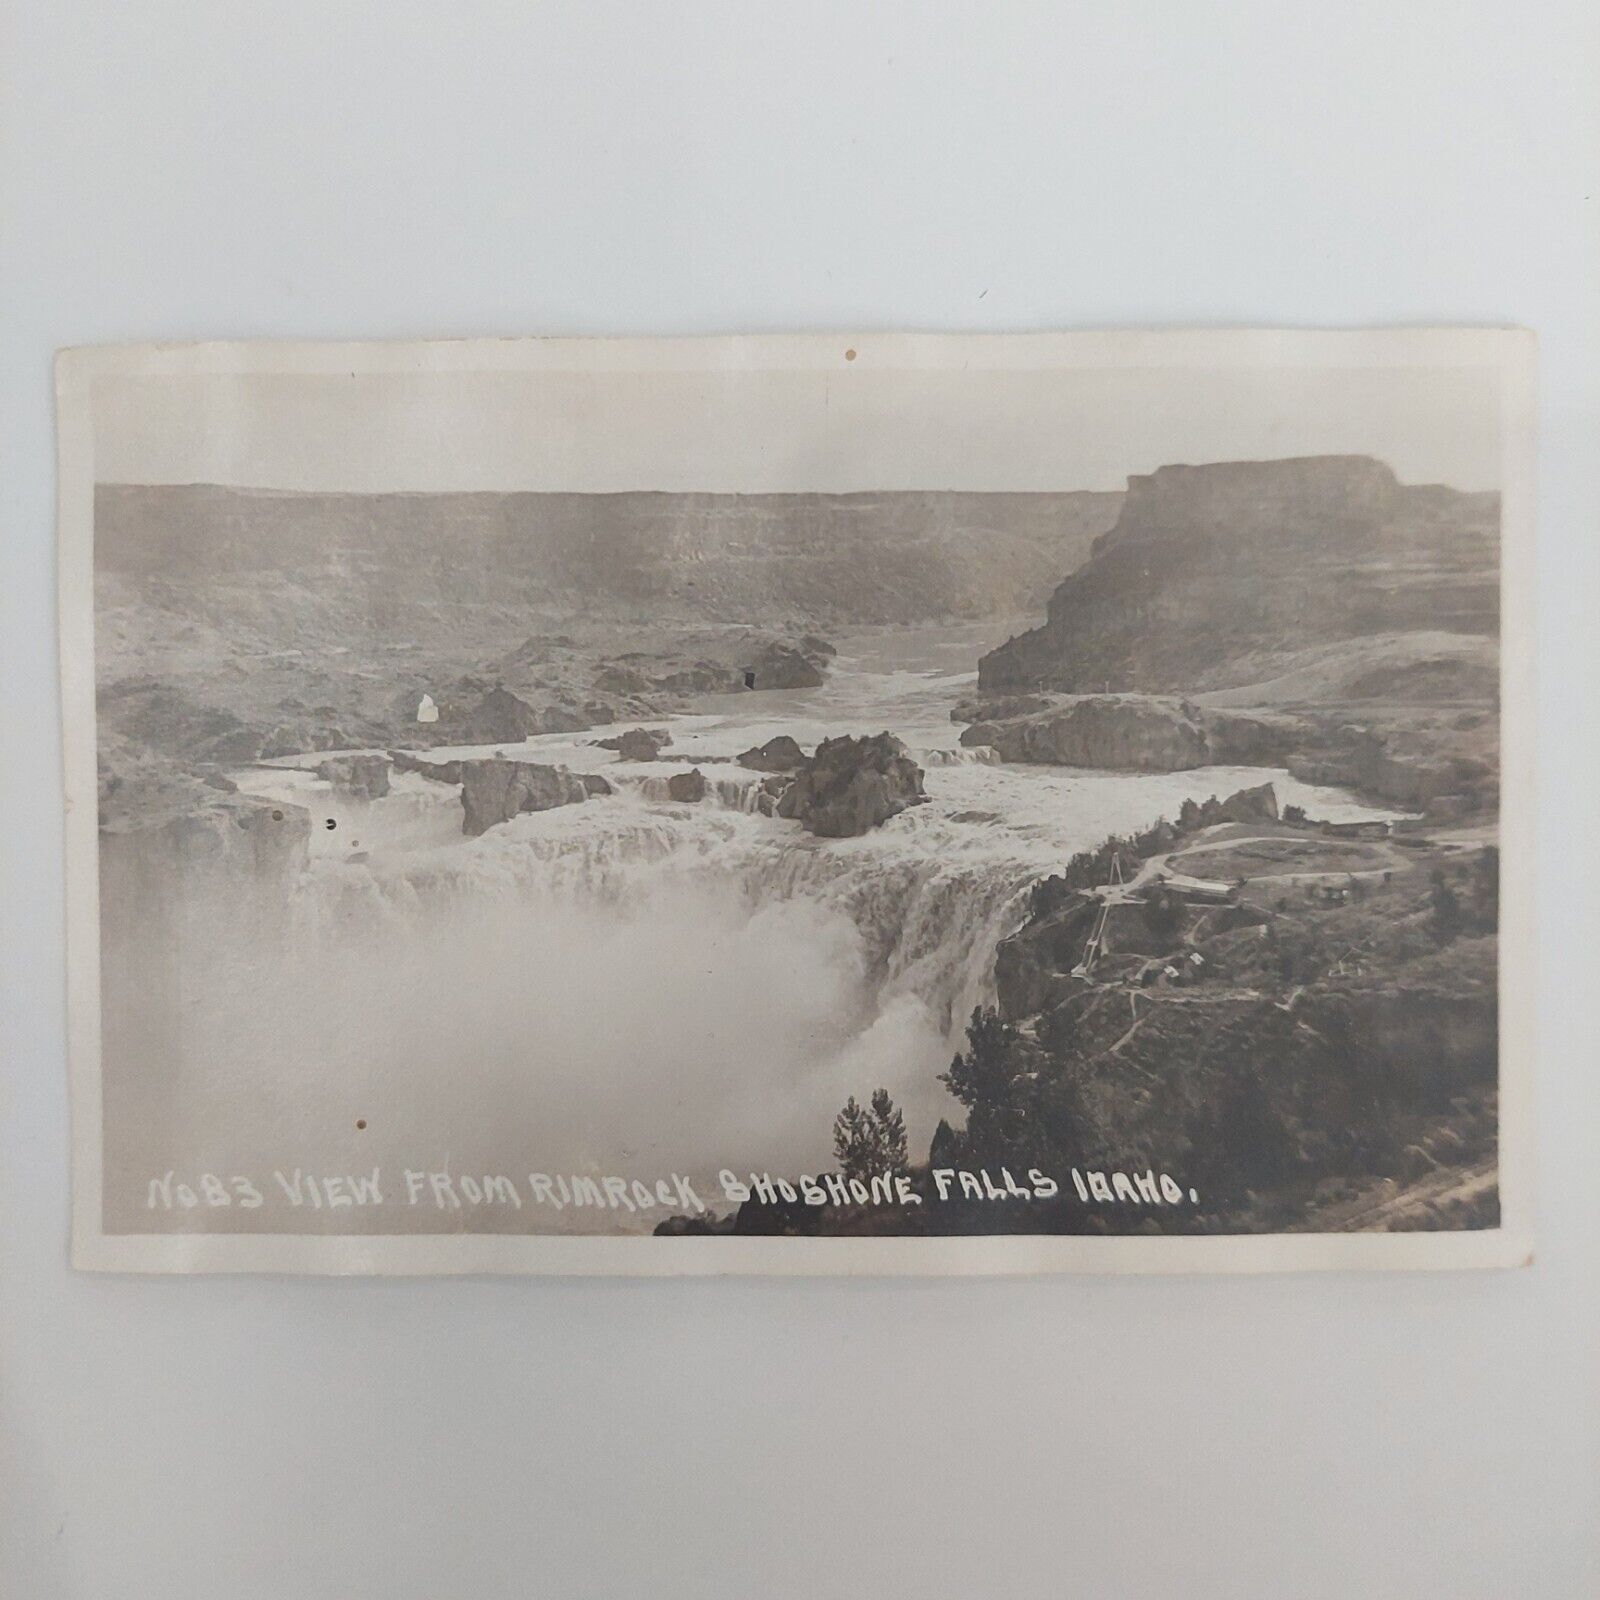 Vintage postcard No 83 view from Rimrock Shoshone Falls Idaho unused